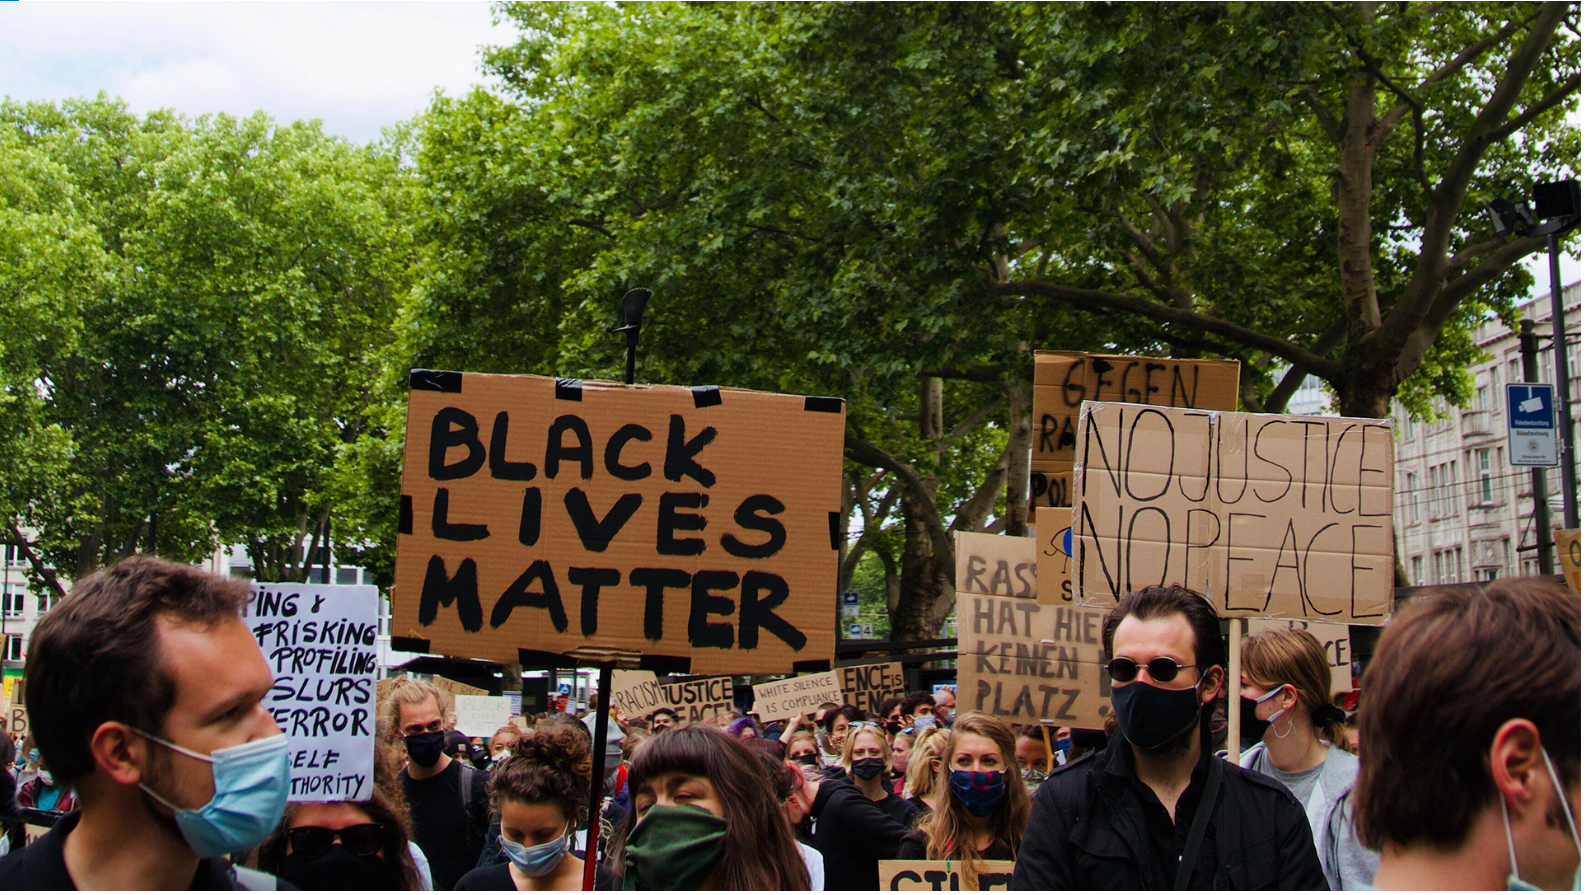 Menschen sind auf einer Demo, sie tragen Mund-Nase-Schutz. In der MItte ein Schild: "Black Lives Matter", rechts ein Schild: "No Justice No Peace"